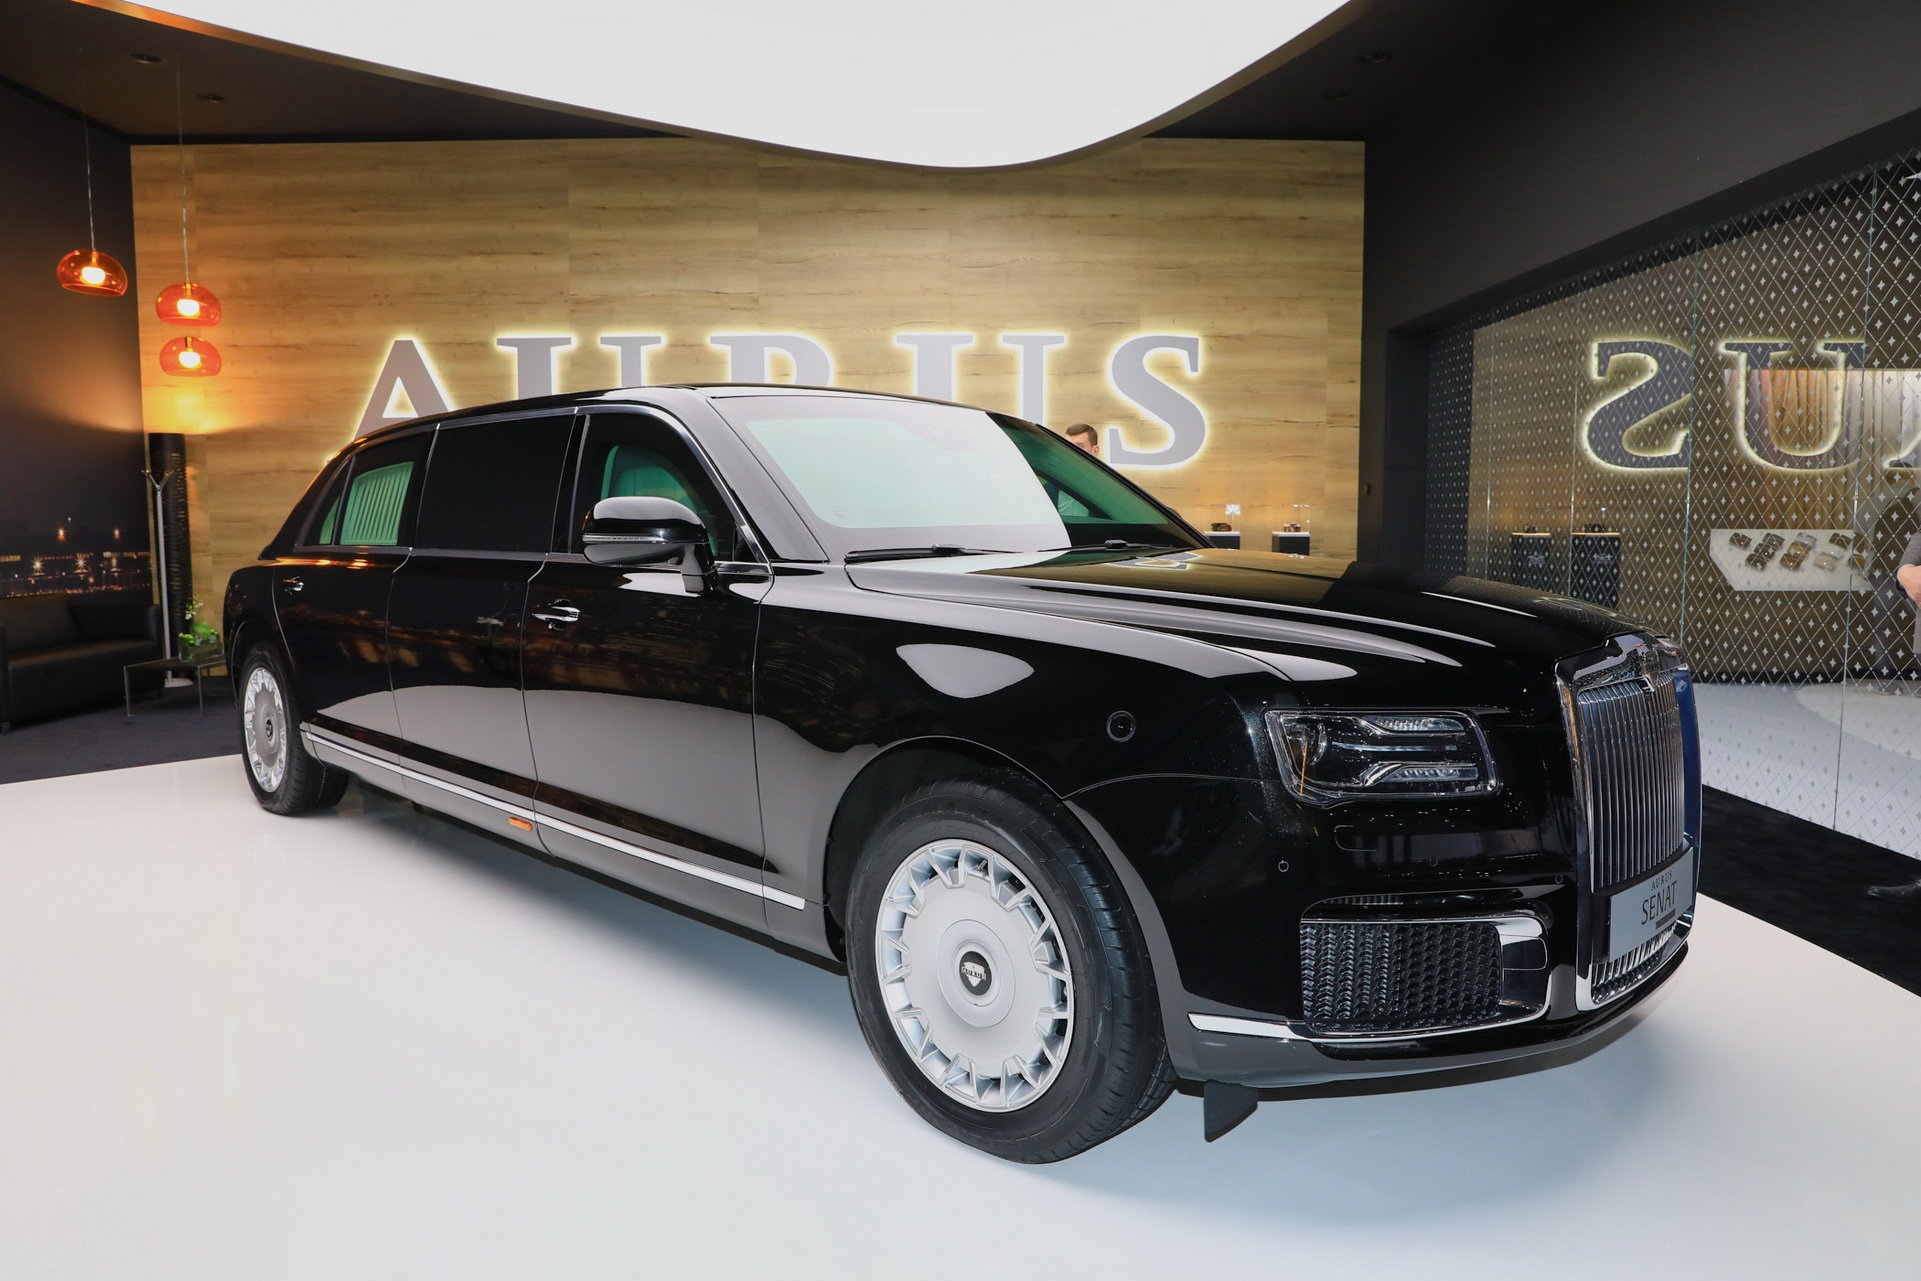 Rusların Rolls-Royce'u olarak anılan Aurus, Moskova'da ilk showroom'unu açtı